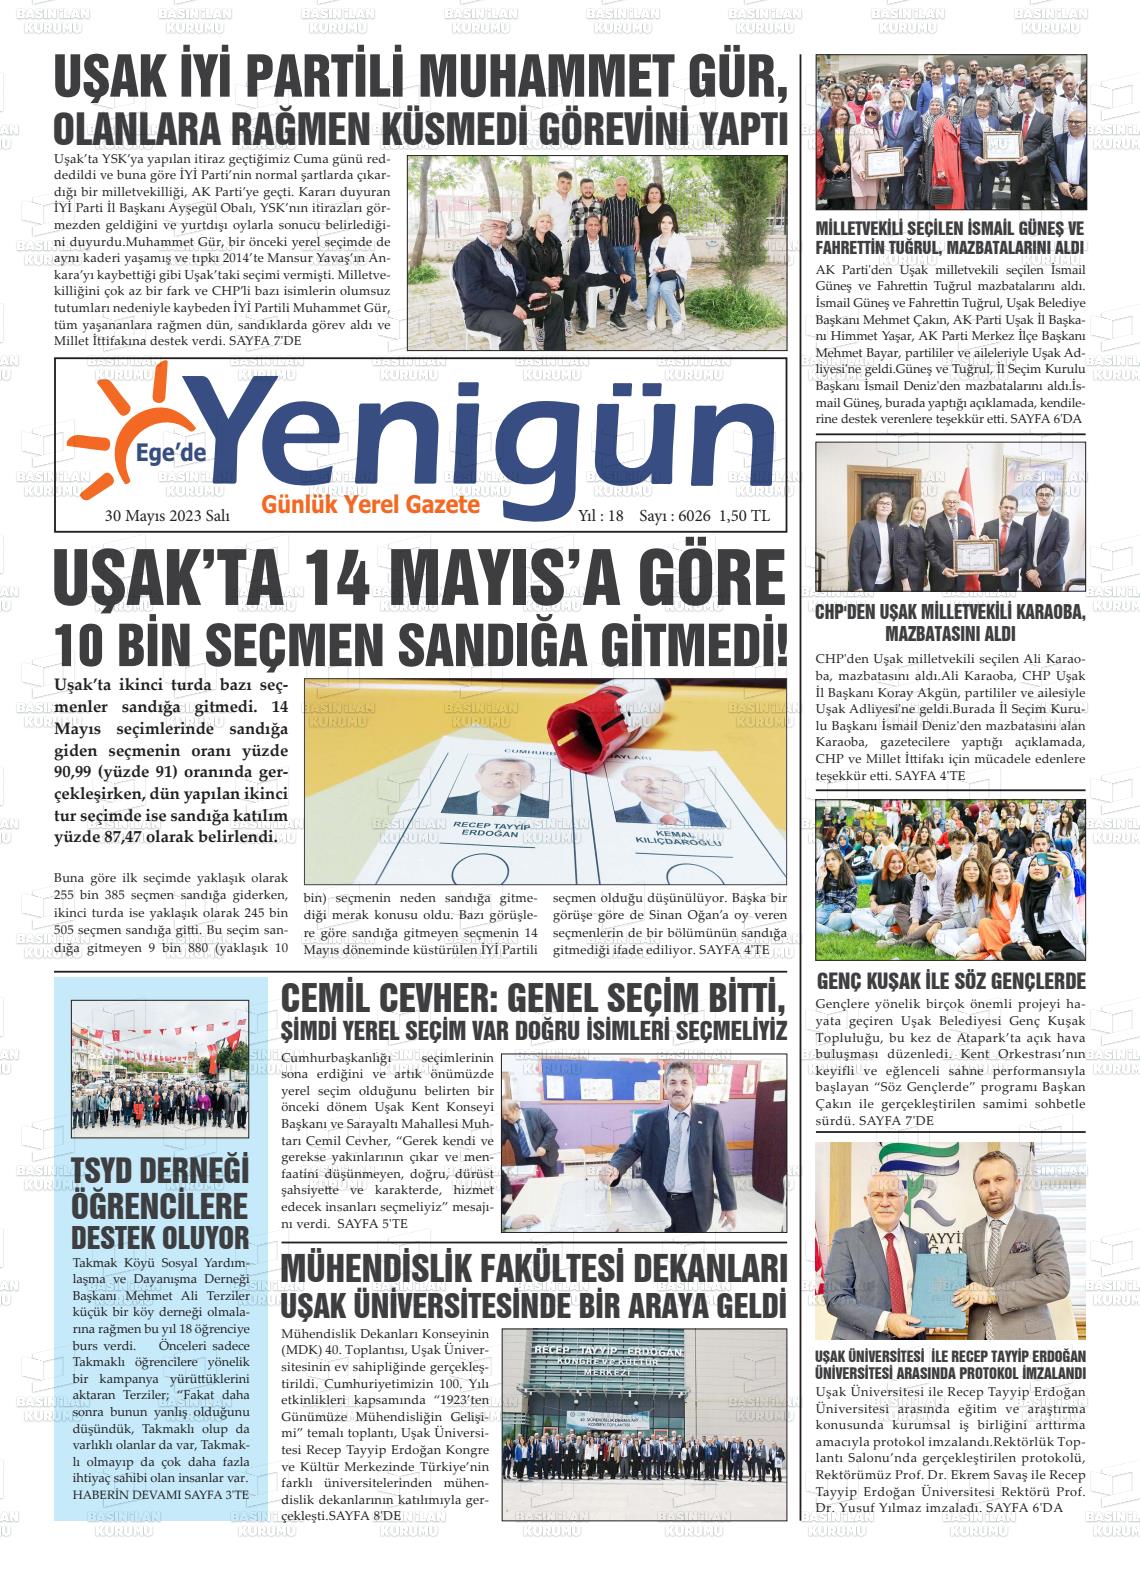 30 Mayıs 2023 EGE'DE YENİGÜN GAZETESİ Gazete Manşeti